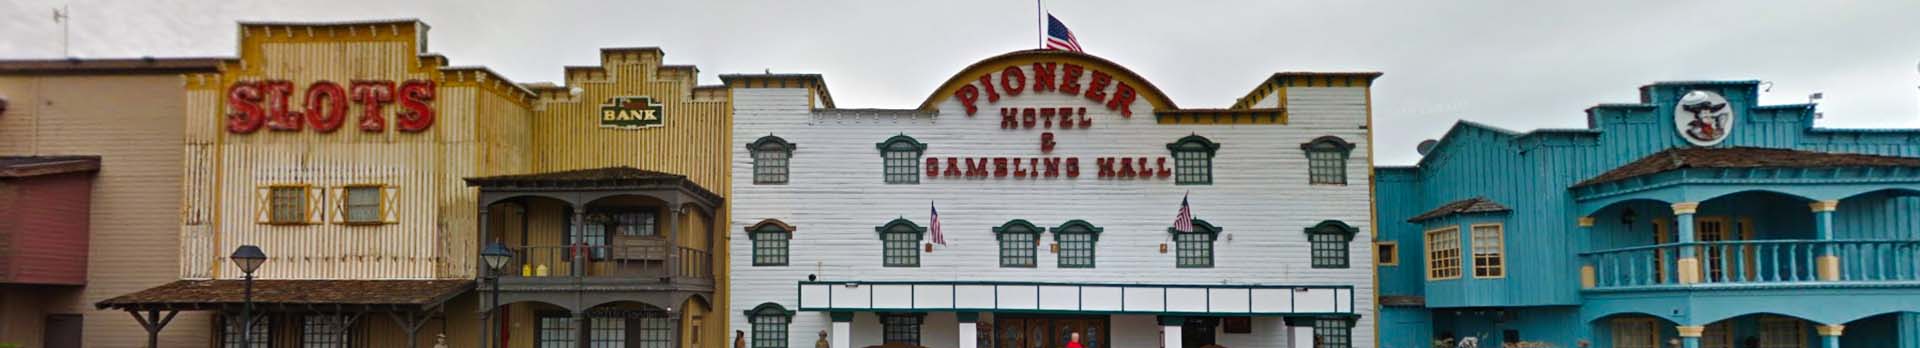 Pioneer Hotel & Gambling Hall